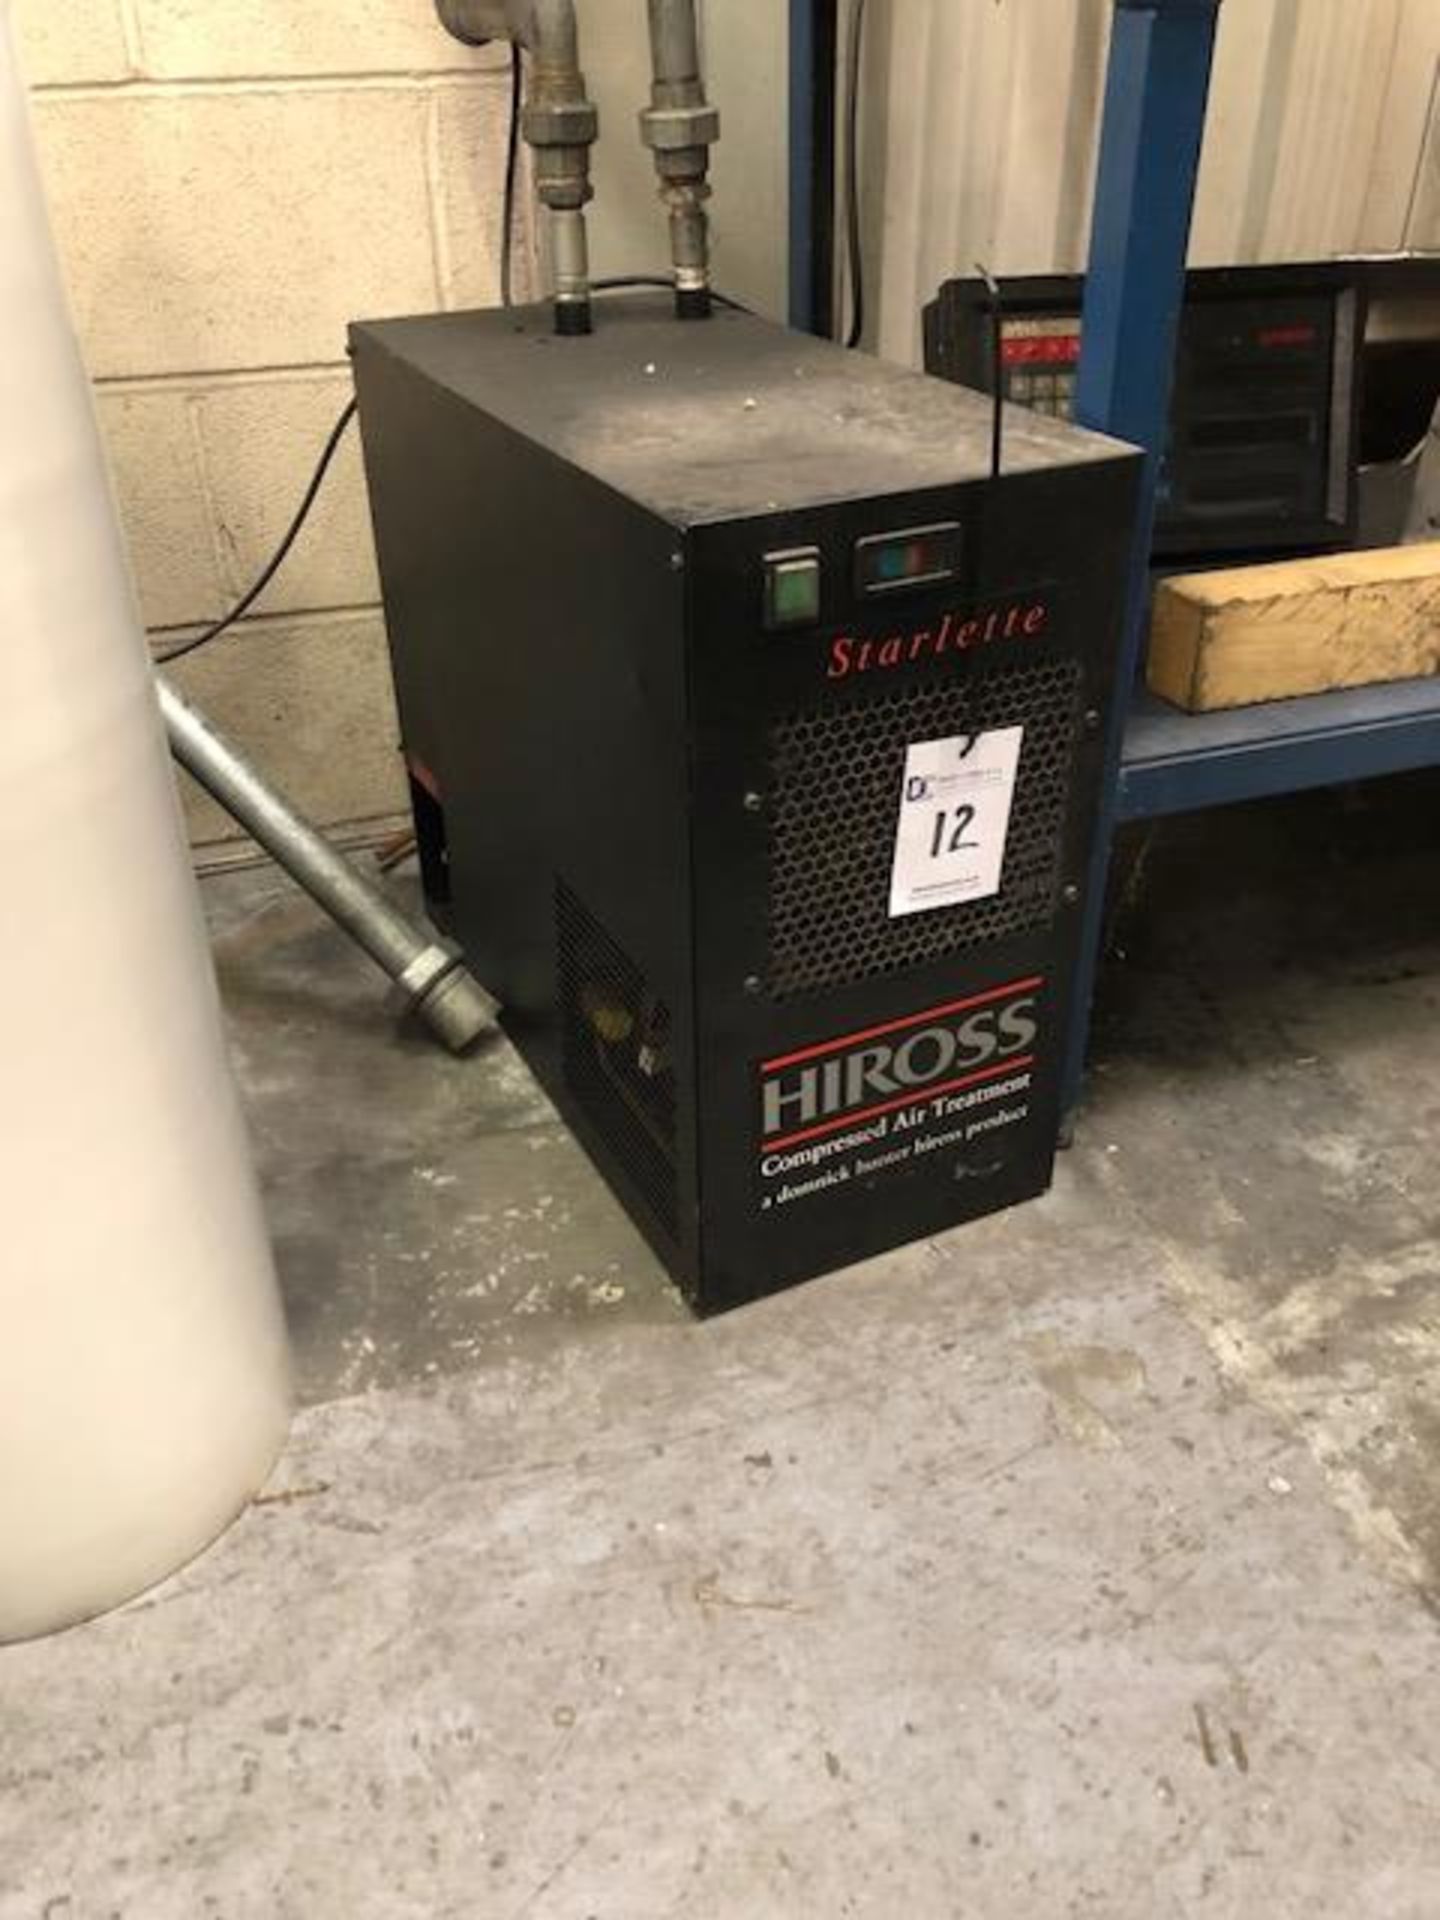 PARKER HIROSS STARLETTE refrigeration air dryer